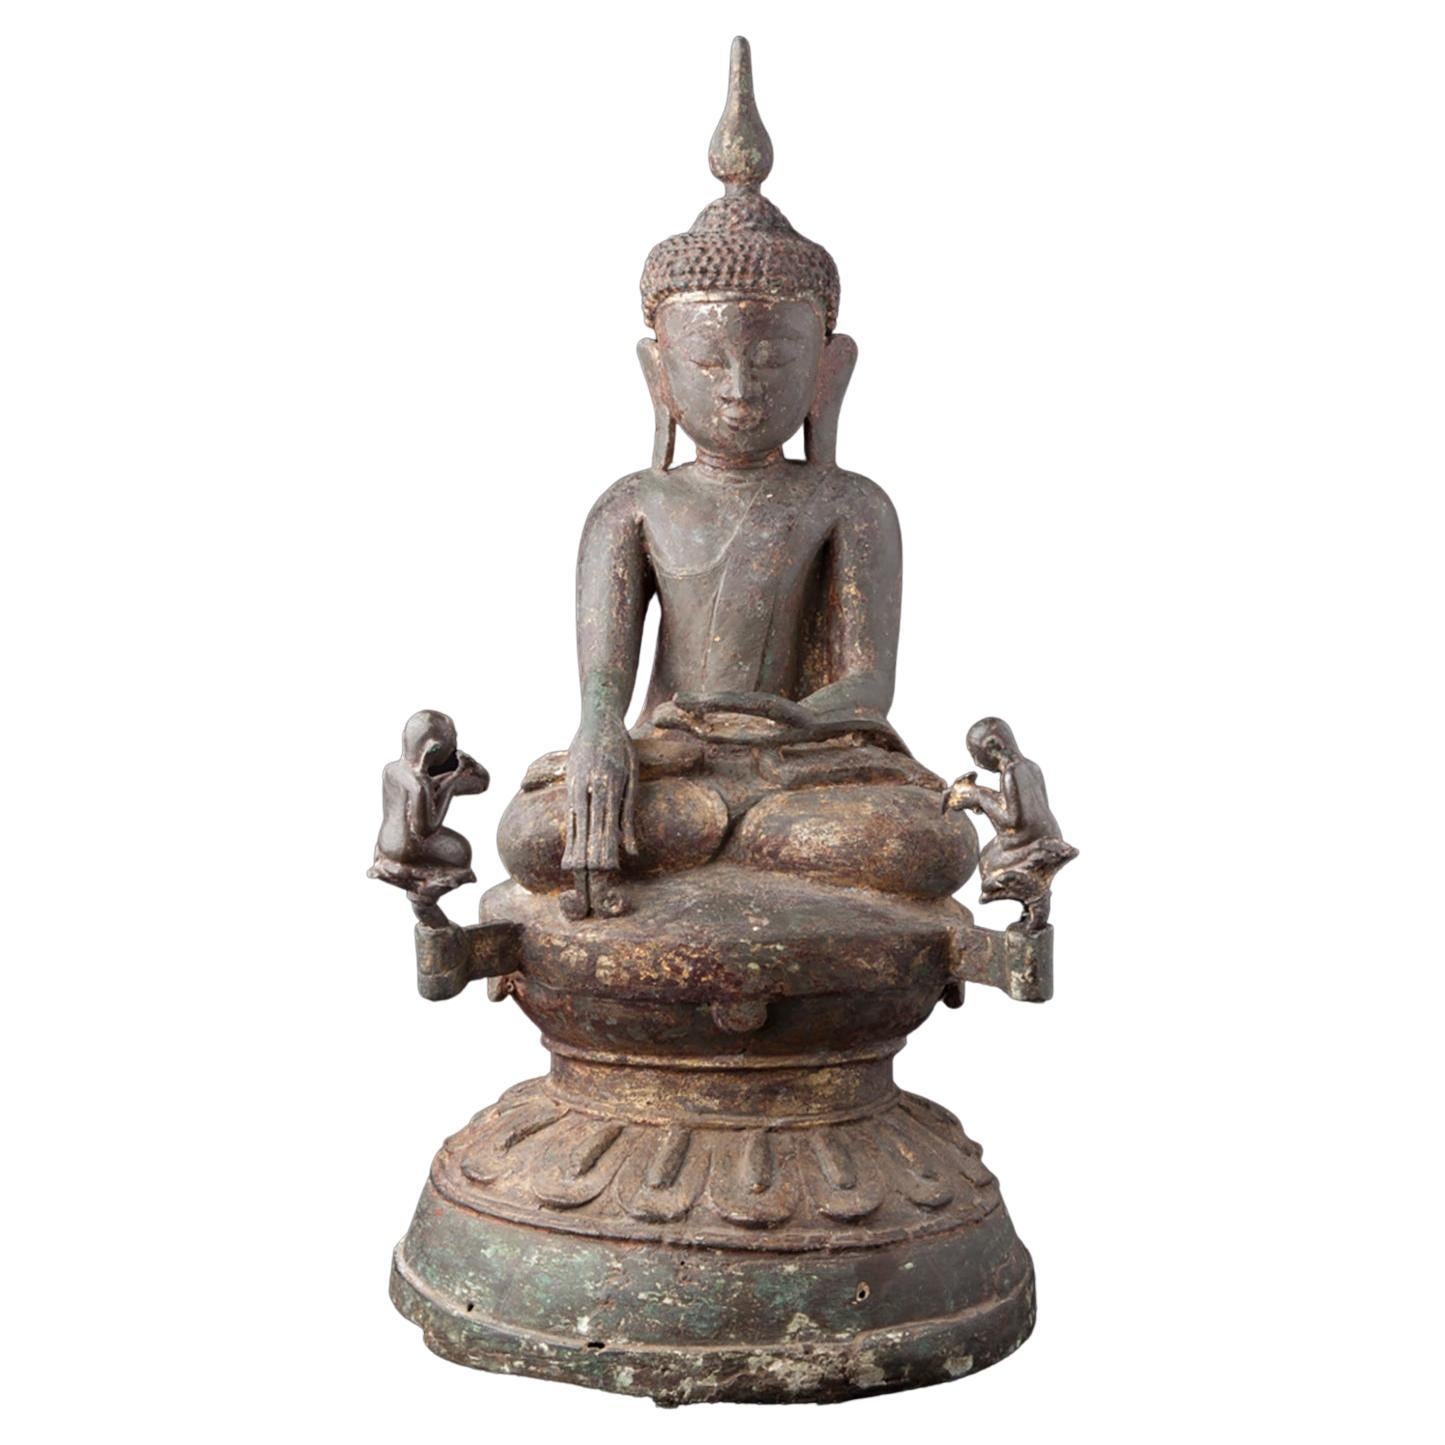 15-16th century special bronze Ava Buddha statue from Burma - Original Buddhas For Sale